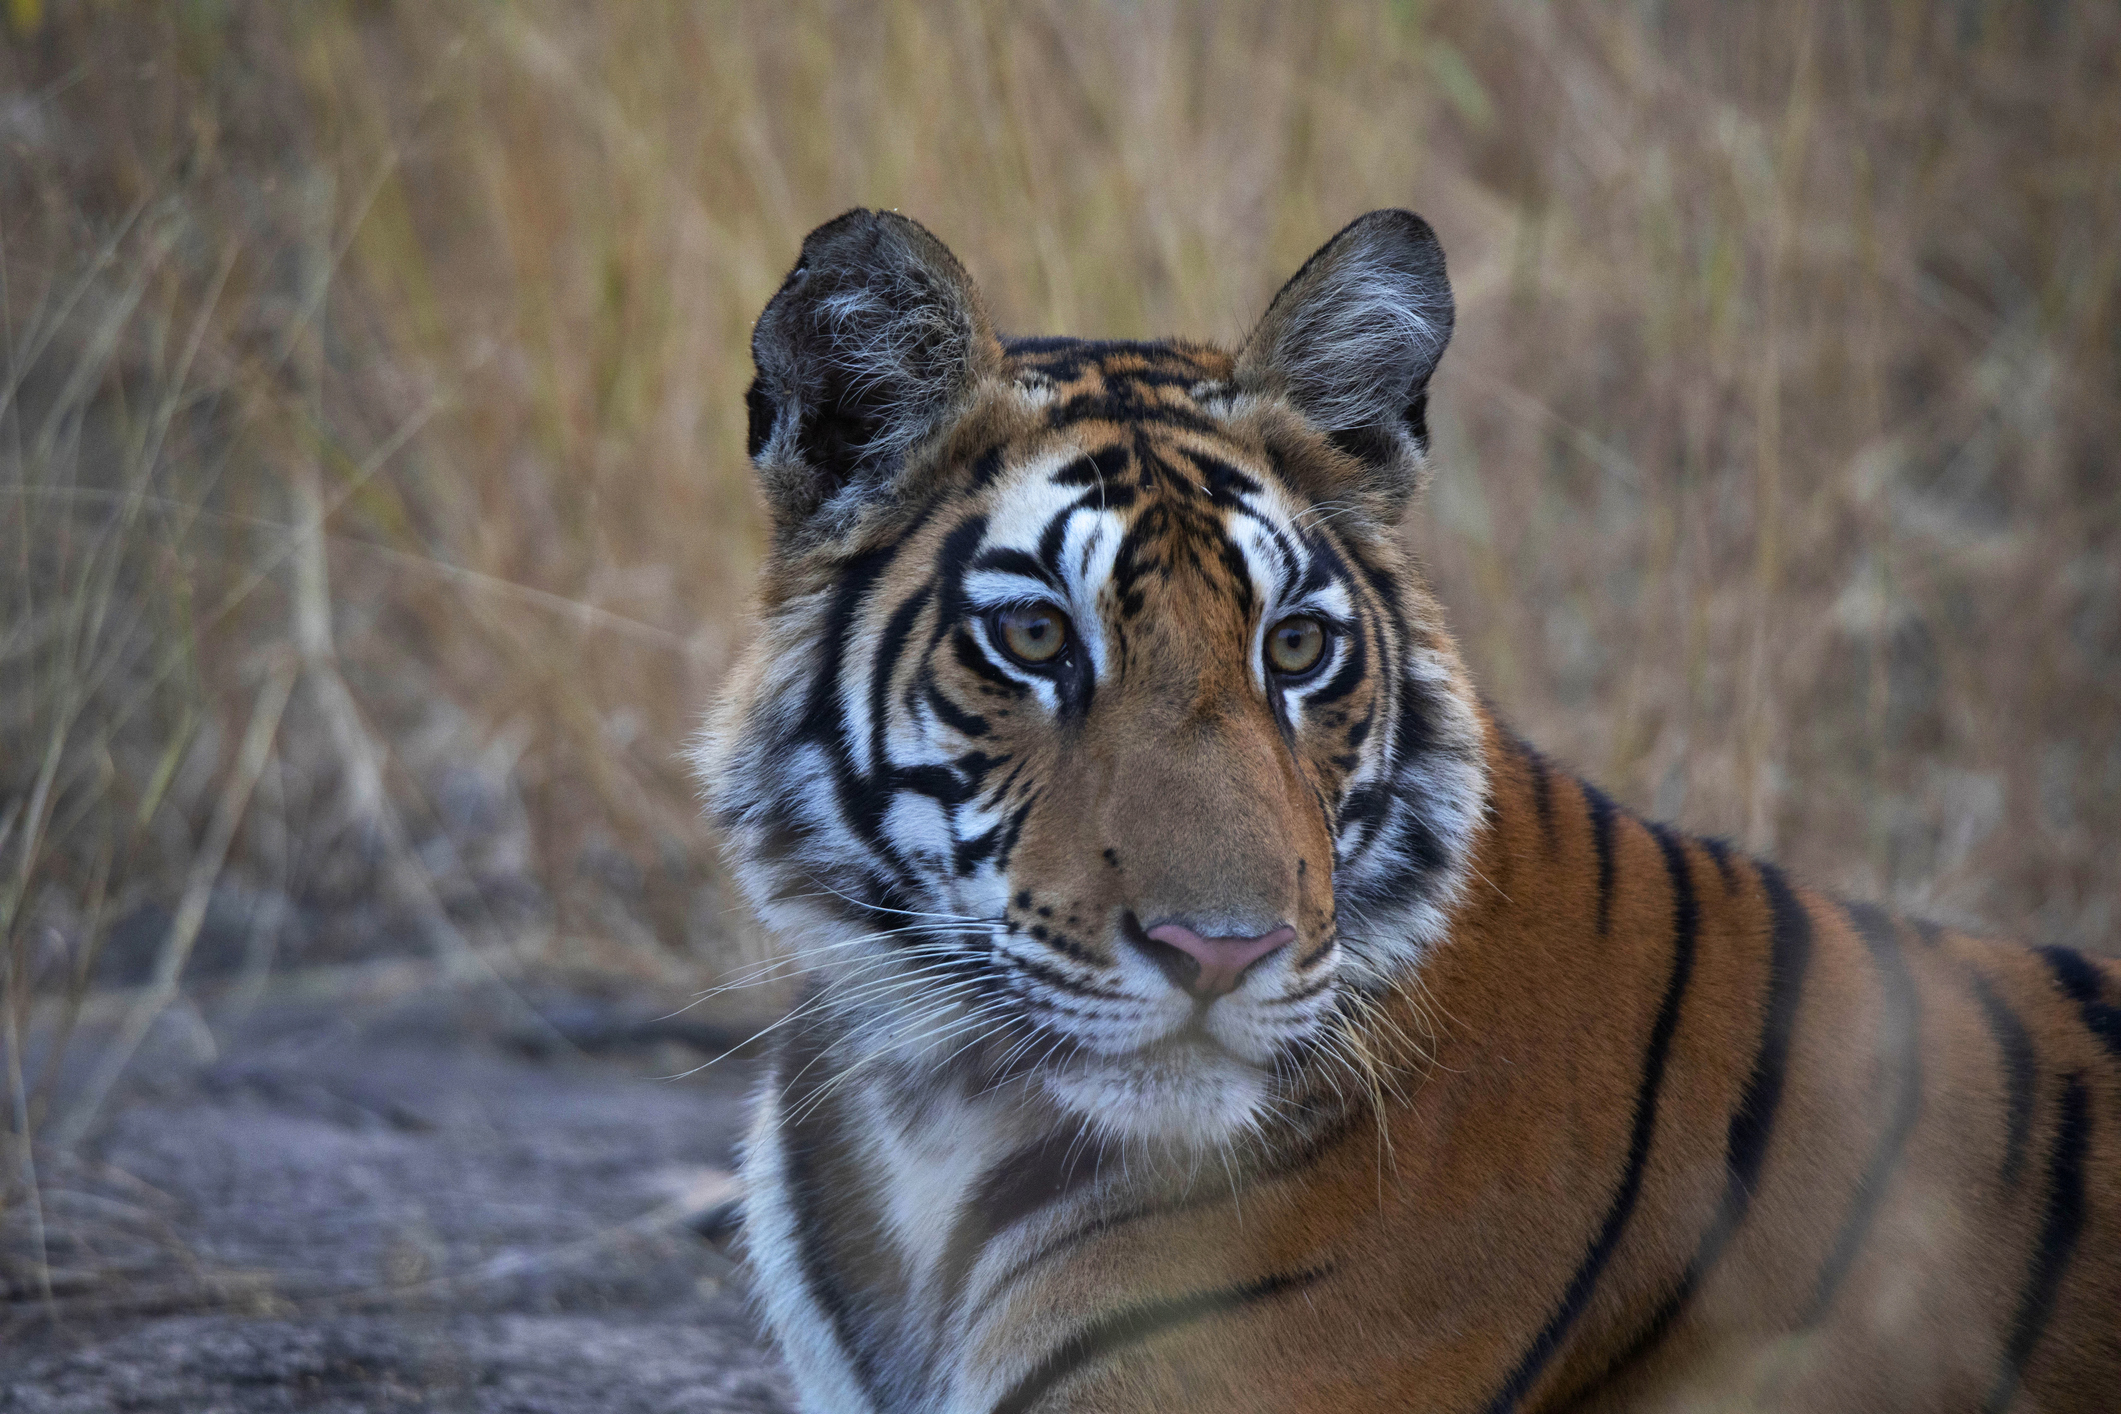 Royal Bengal Tiger. Panna Tiger Reserve, Madhya Pradesh, India